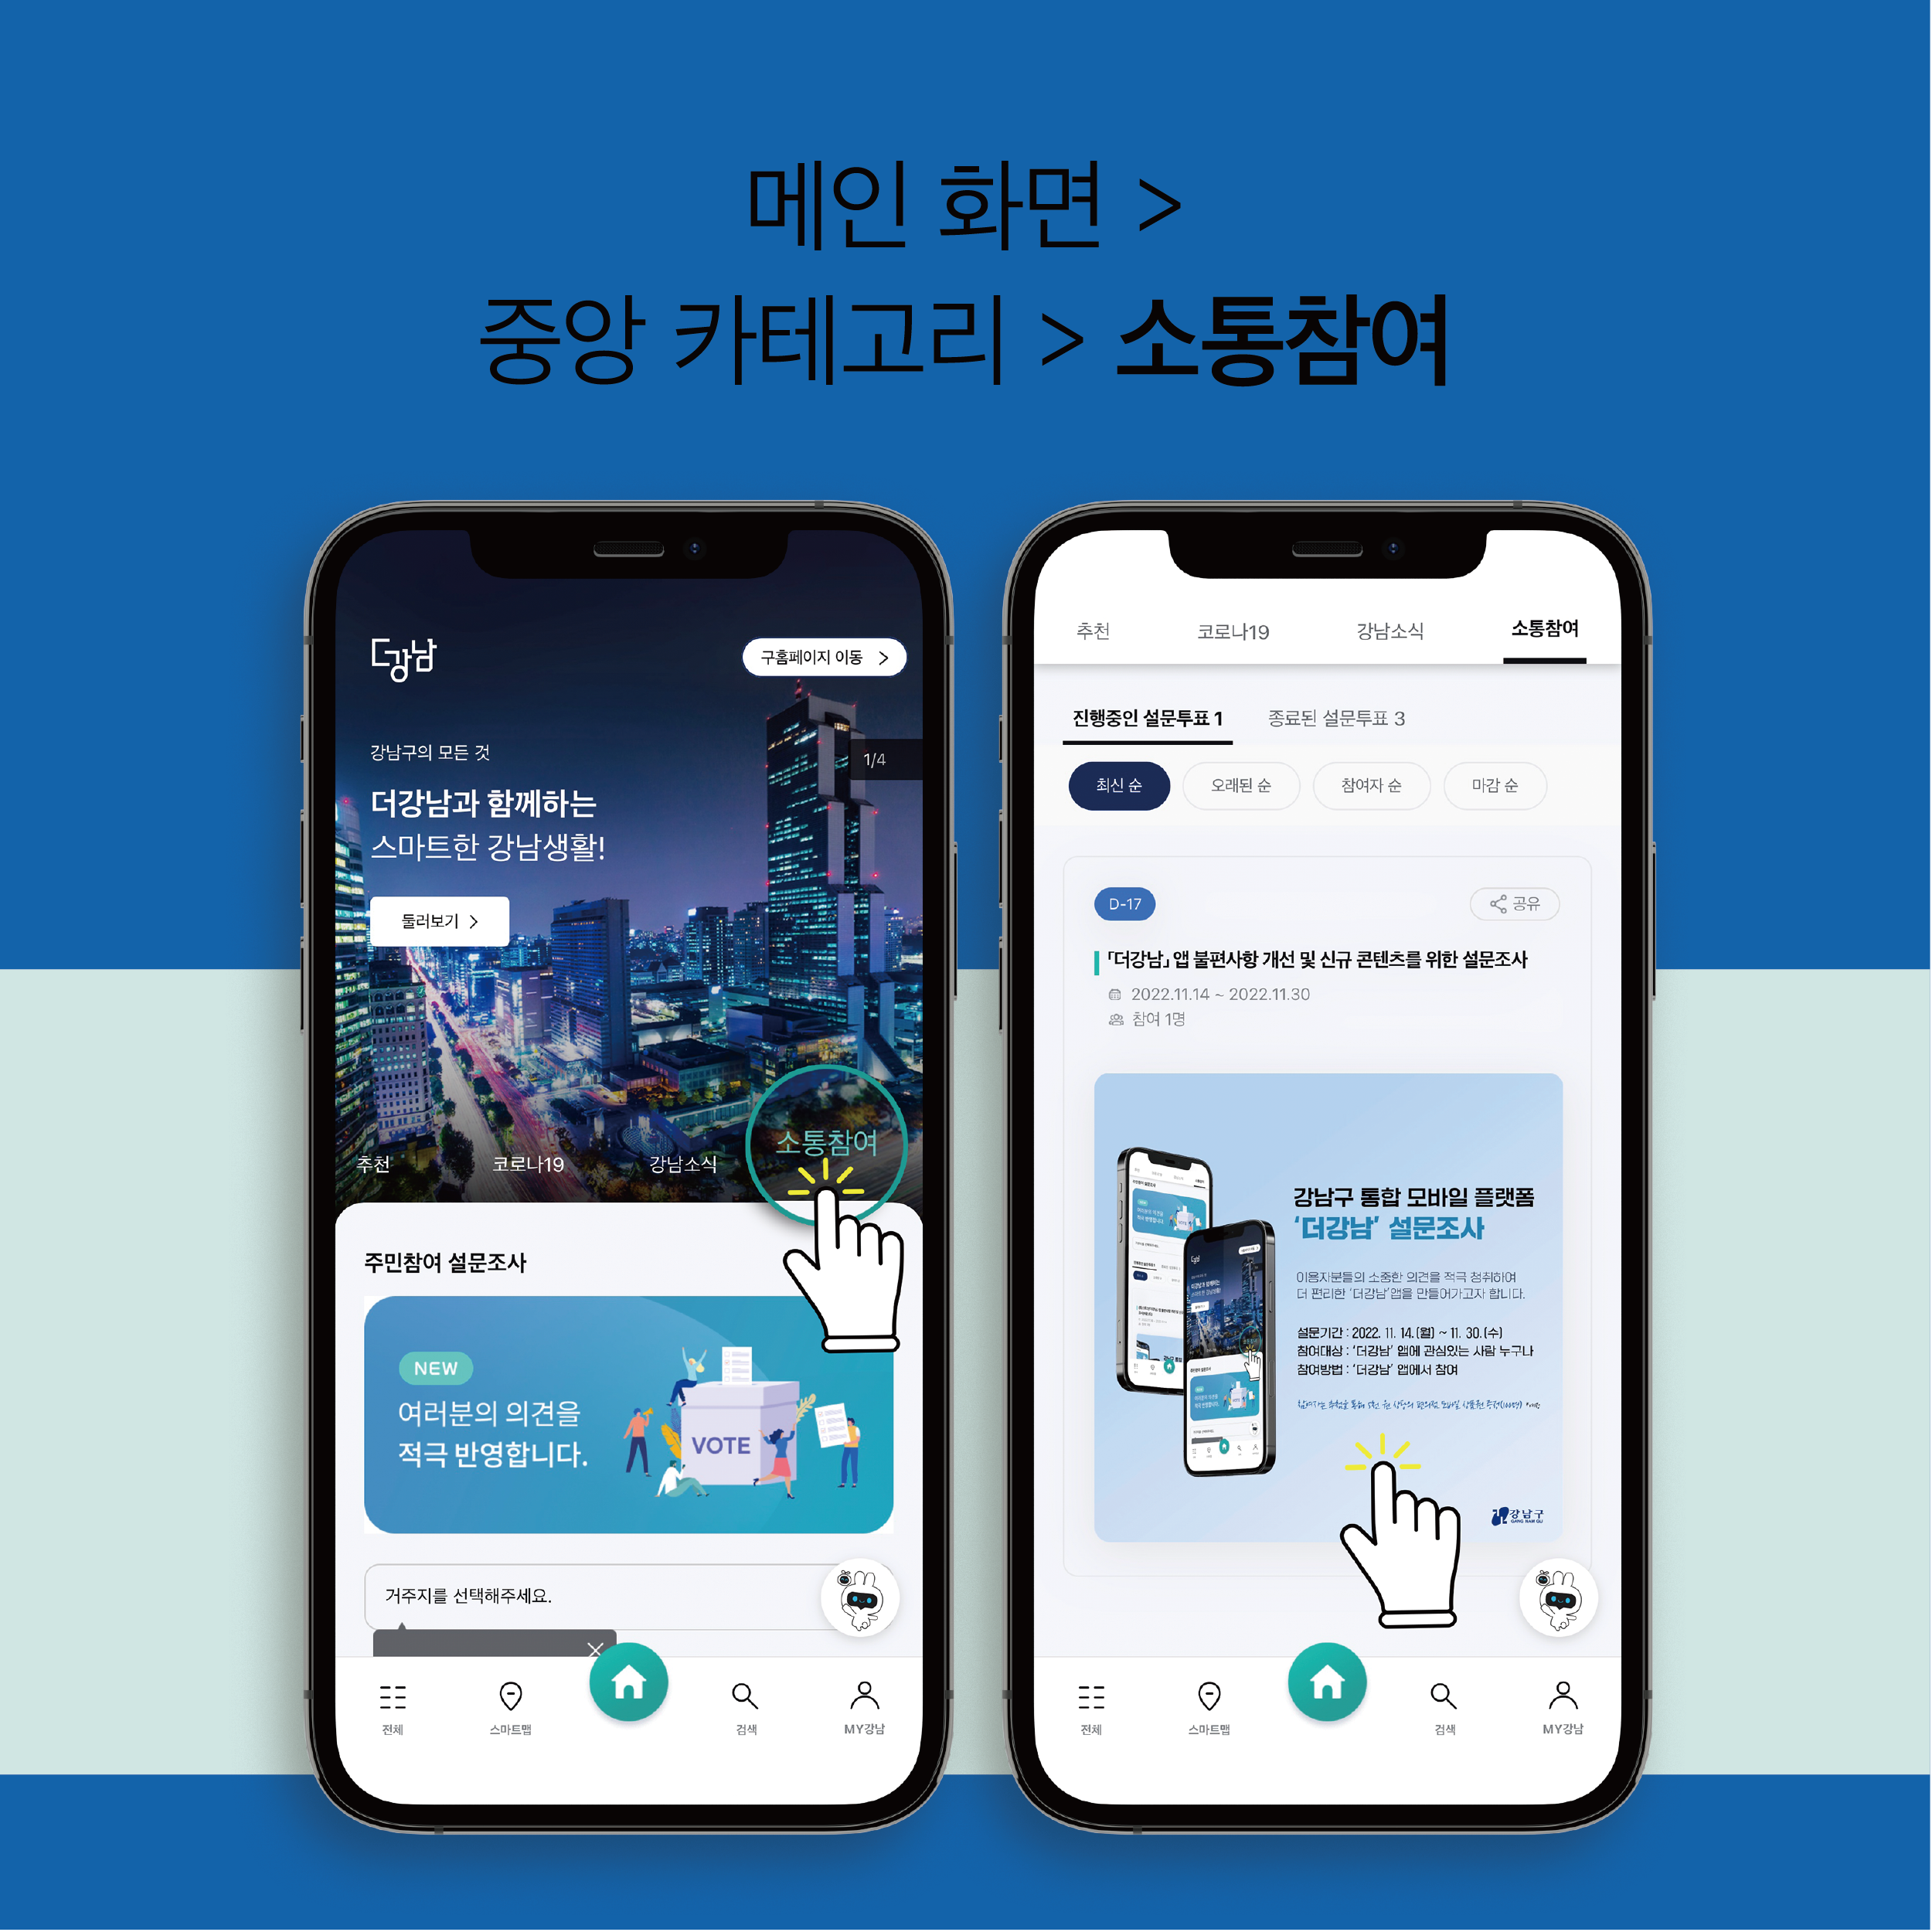 더강남 앱의 메인화면에서 중앙 카테고리 내 소통참여 버튼을 누르면 설문조사에 참여할 수 있습니다.